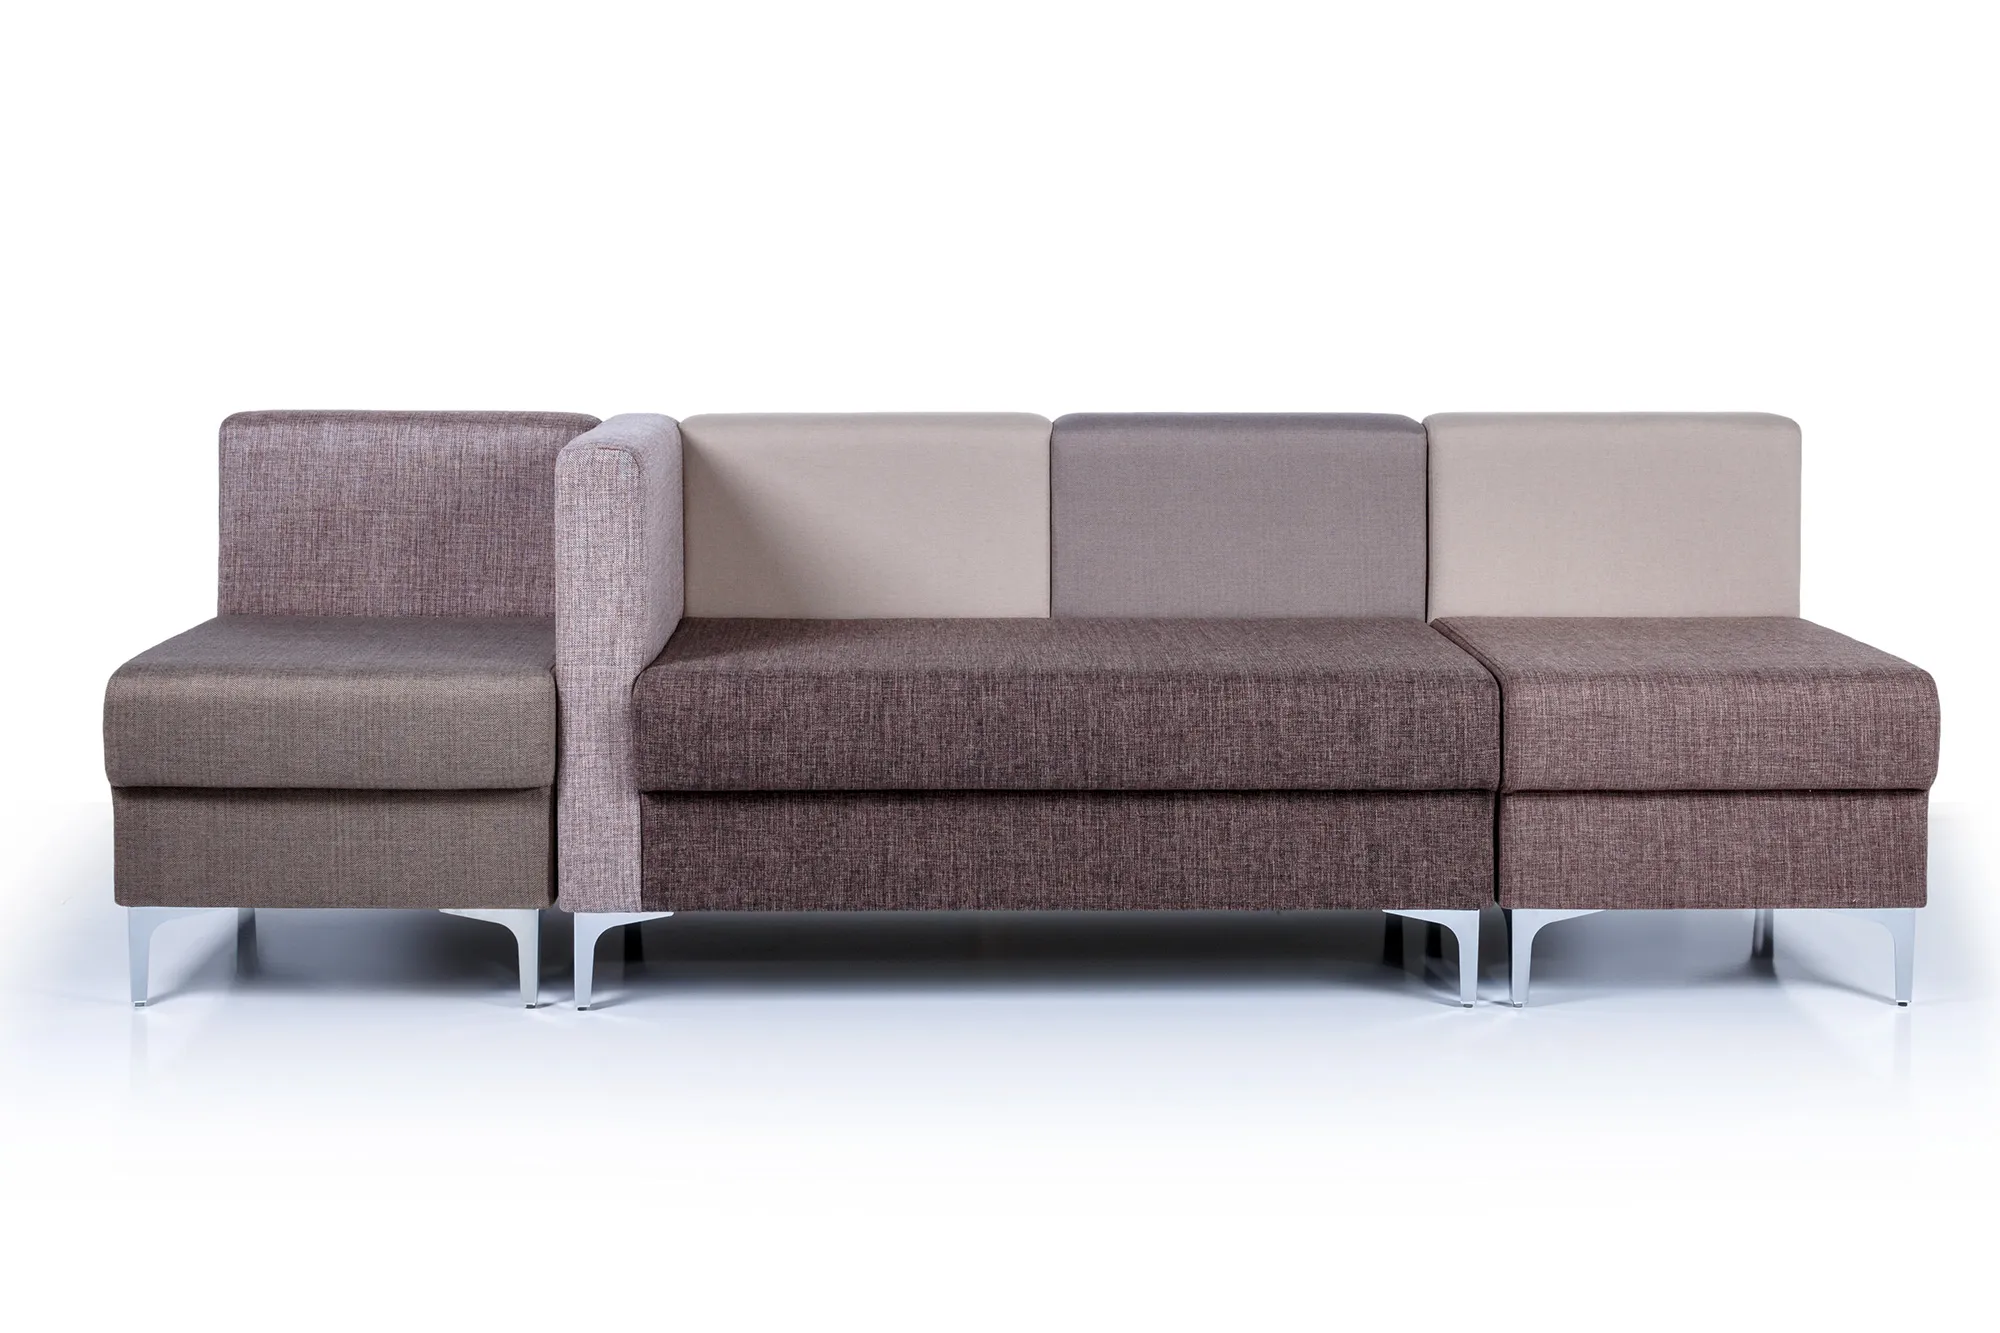 Модульный офисный диван toForm М6 Soft room